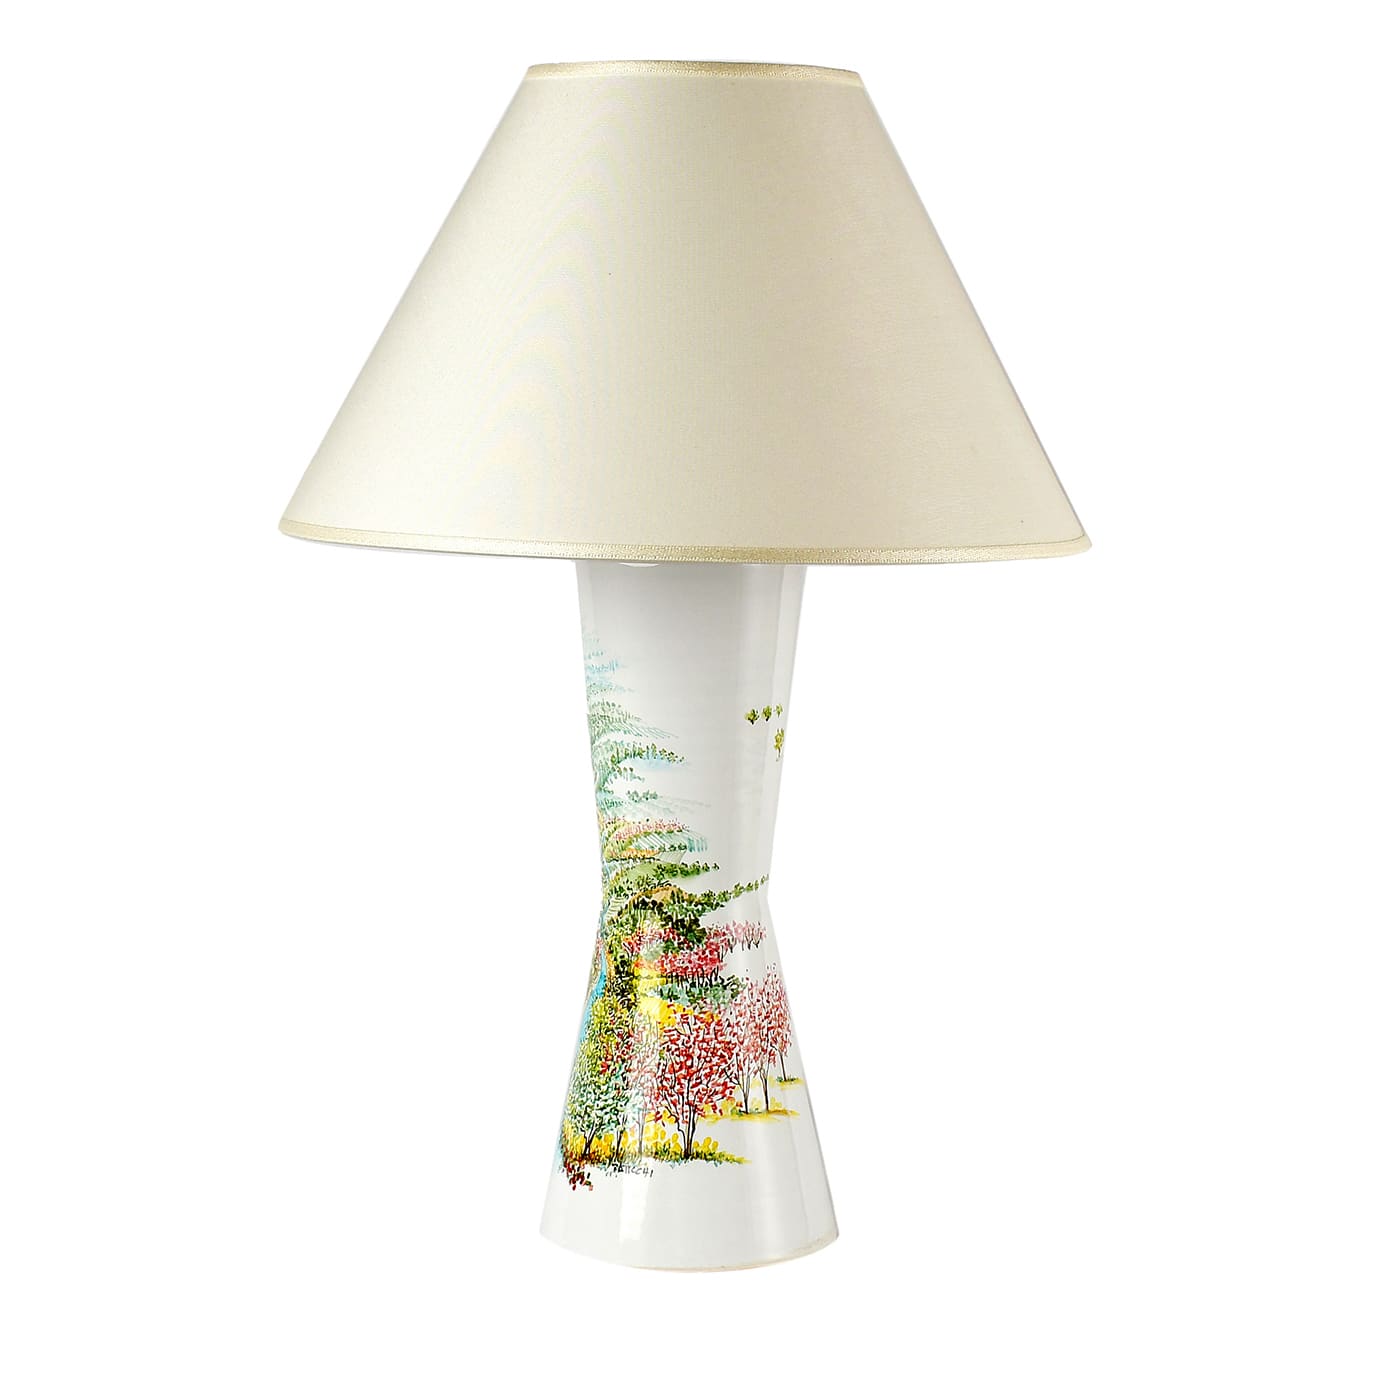 Primavera Table Lamp by Maria Antonietta Taticchi - Materia Ceramica